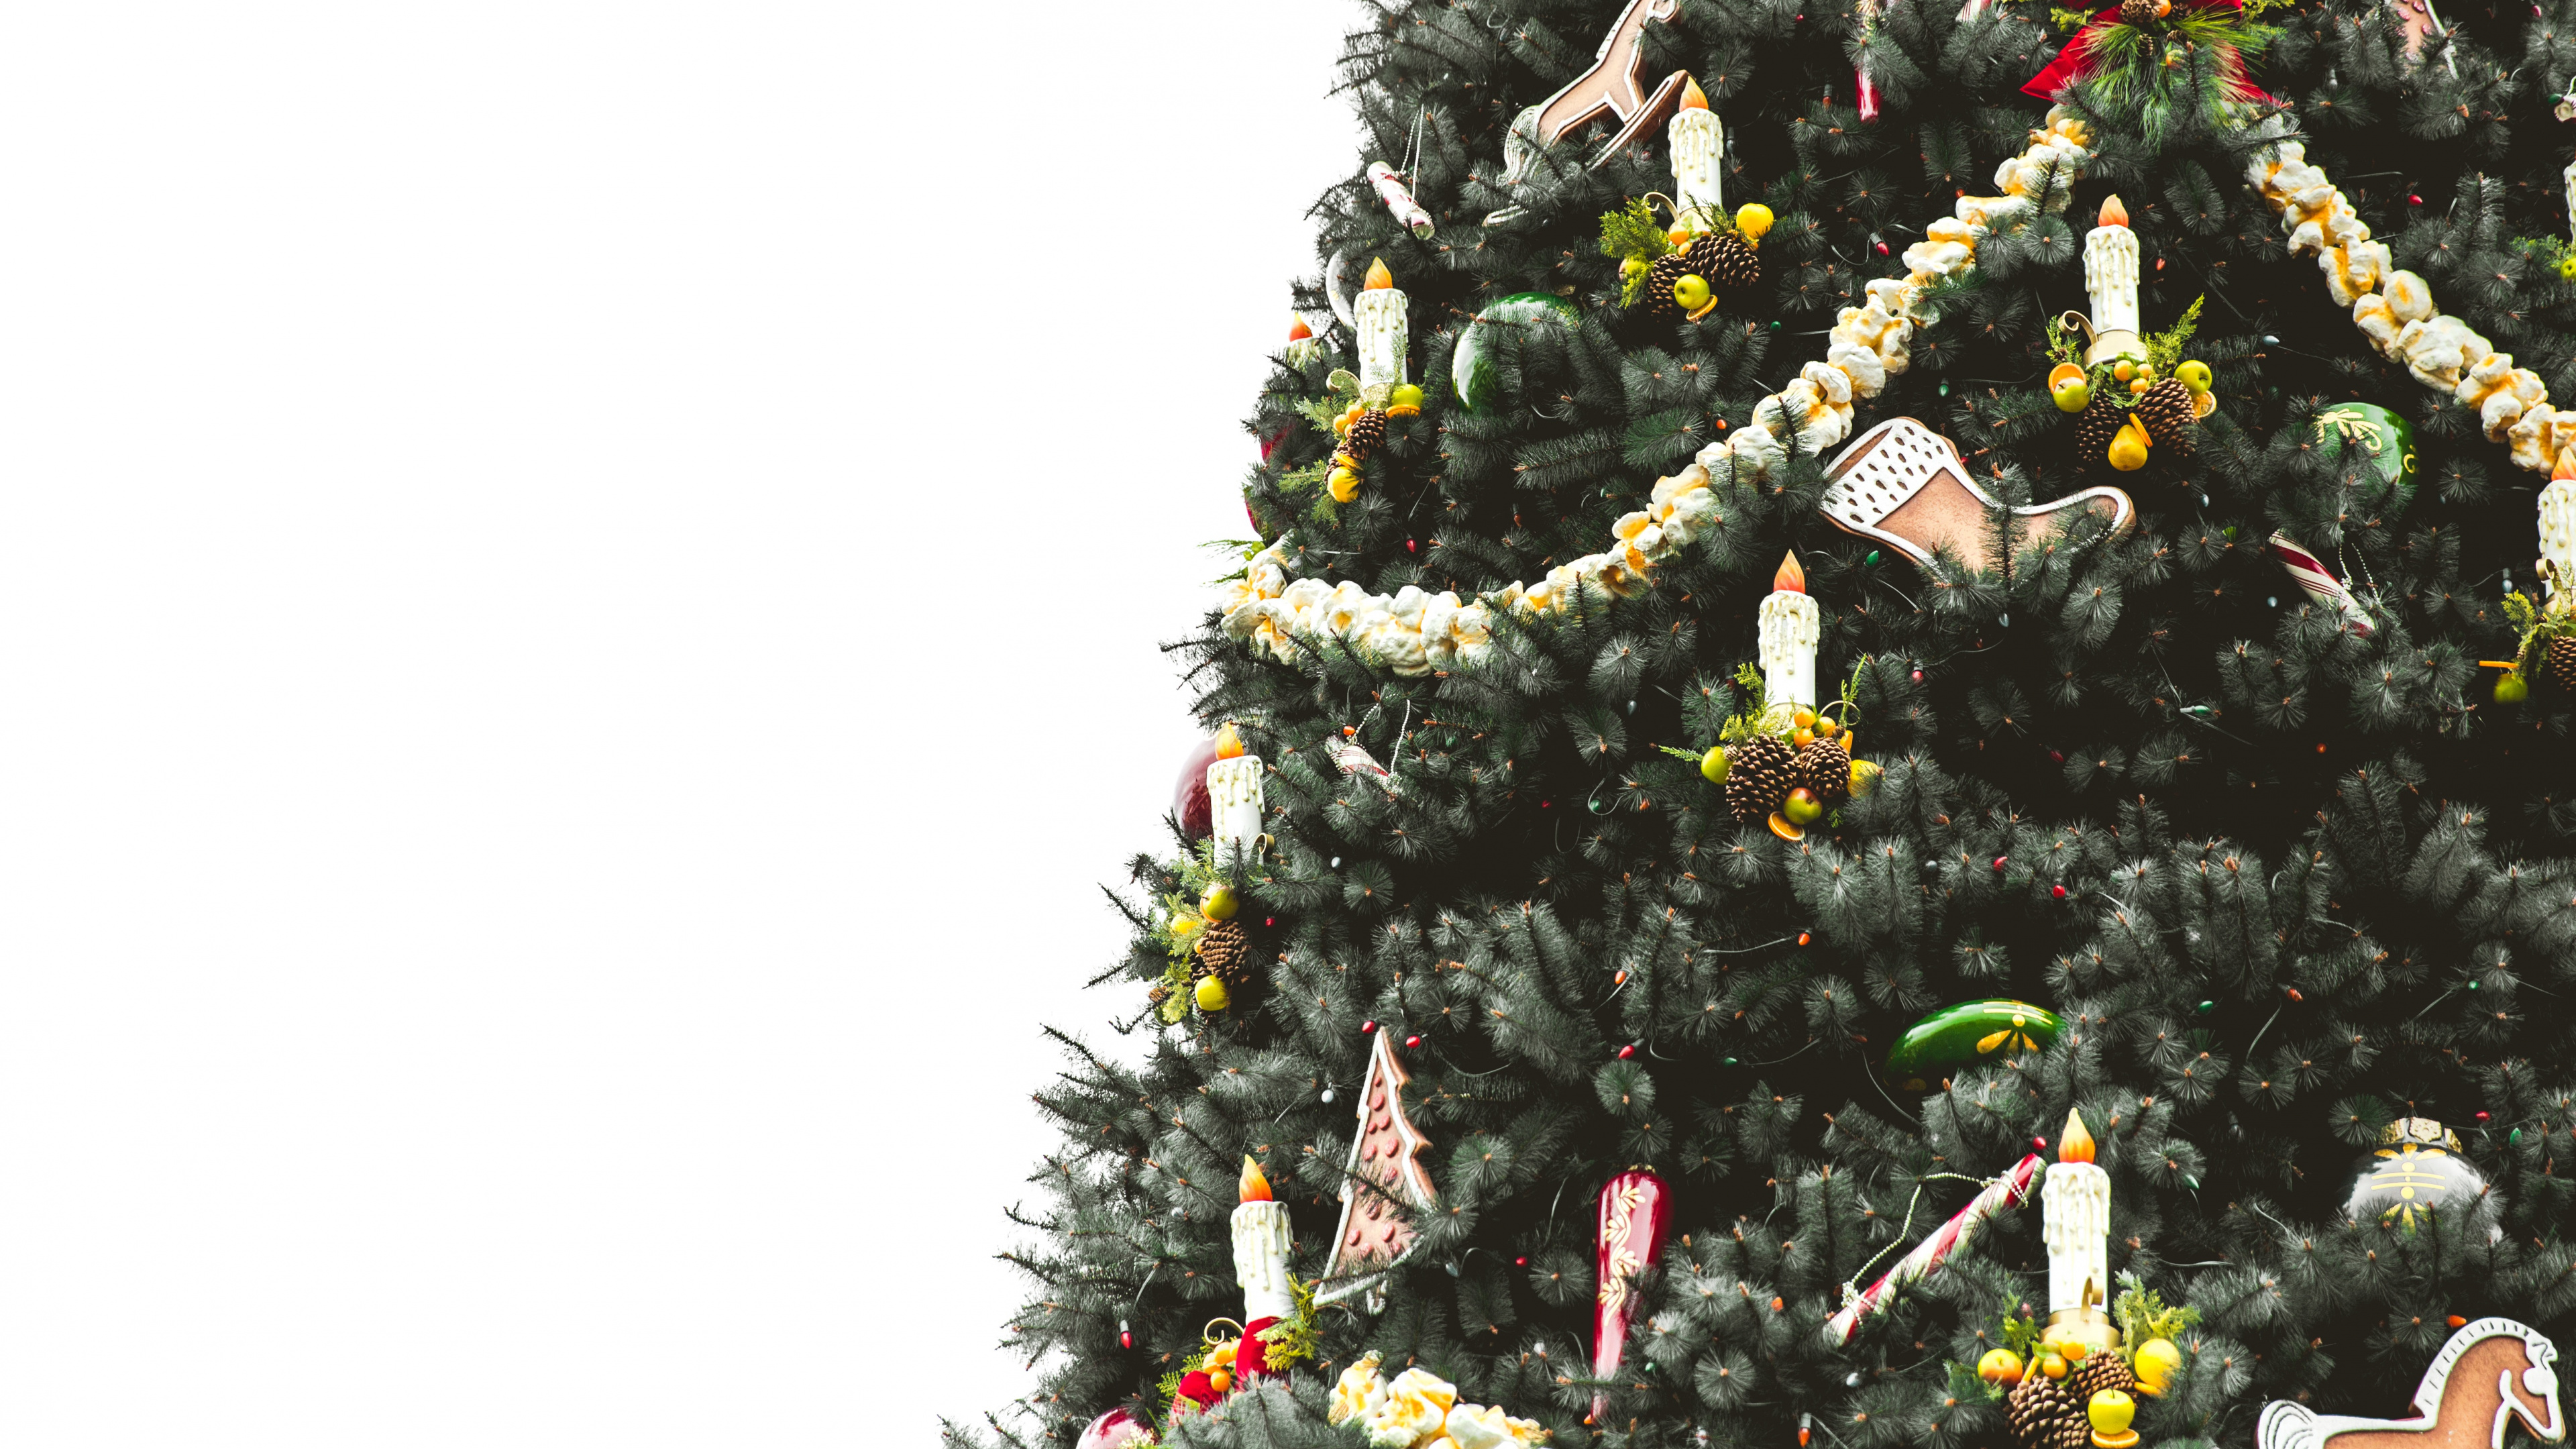 El Día De Navidad, la Navidad y la Temporada de Vacaciones, Planta Leñosa, Evergreen, Decoración de la Navidad. Wallpaper in 3840x2160 Resolution